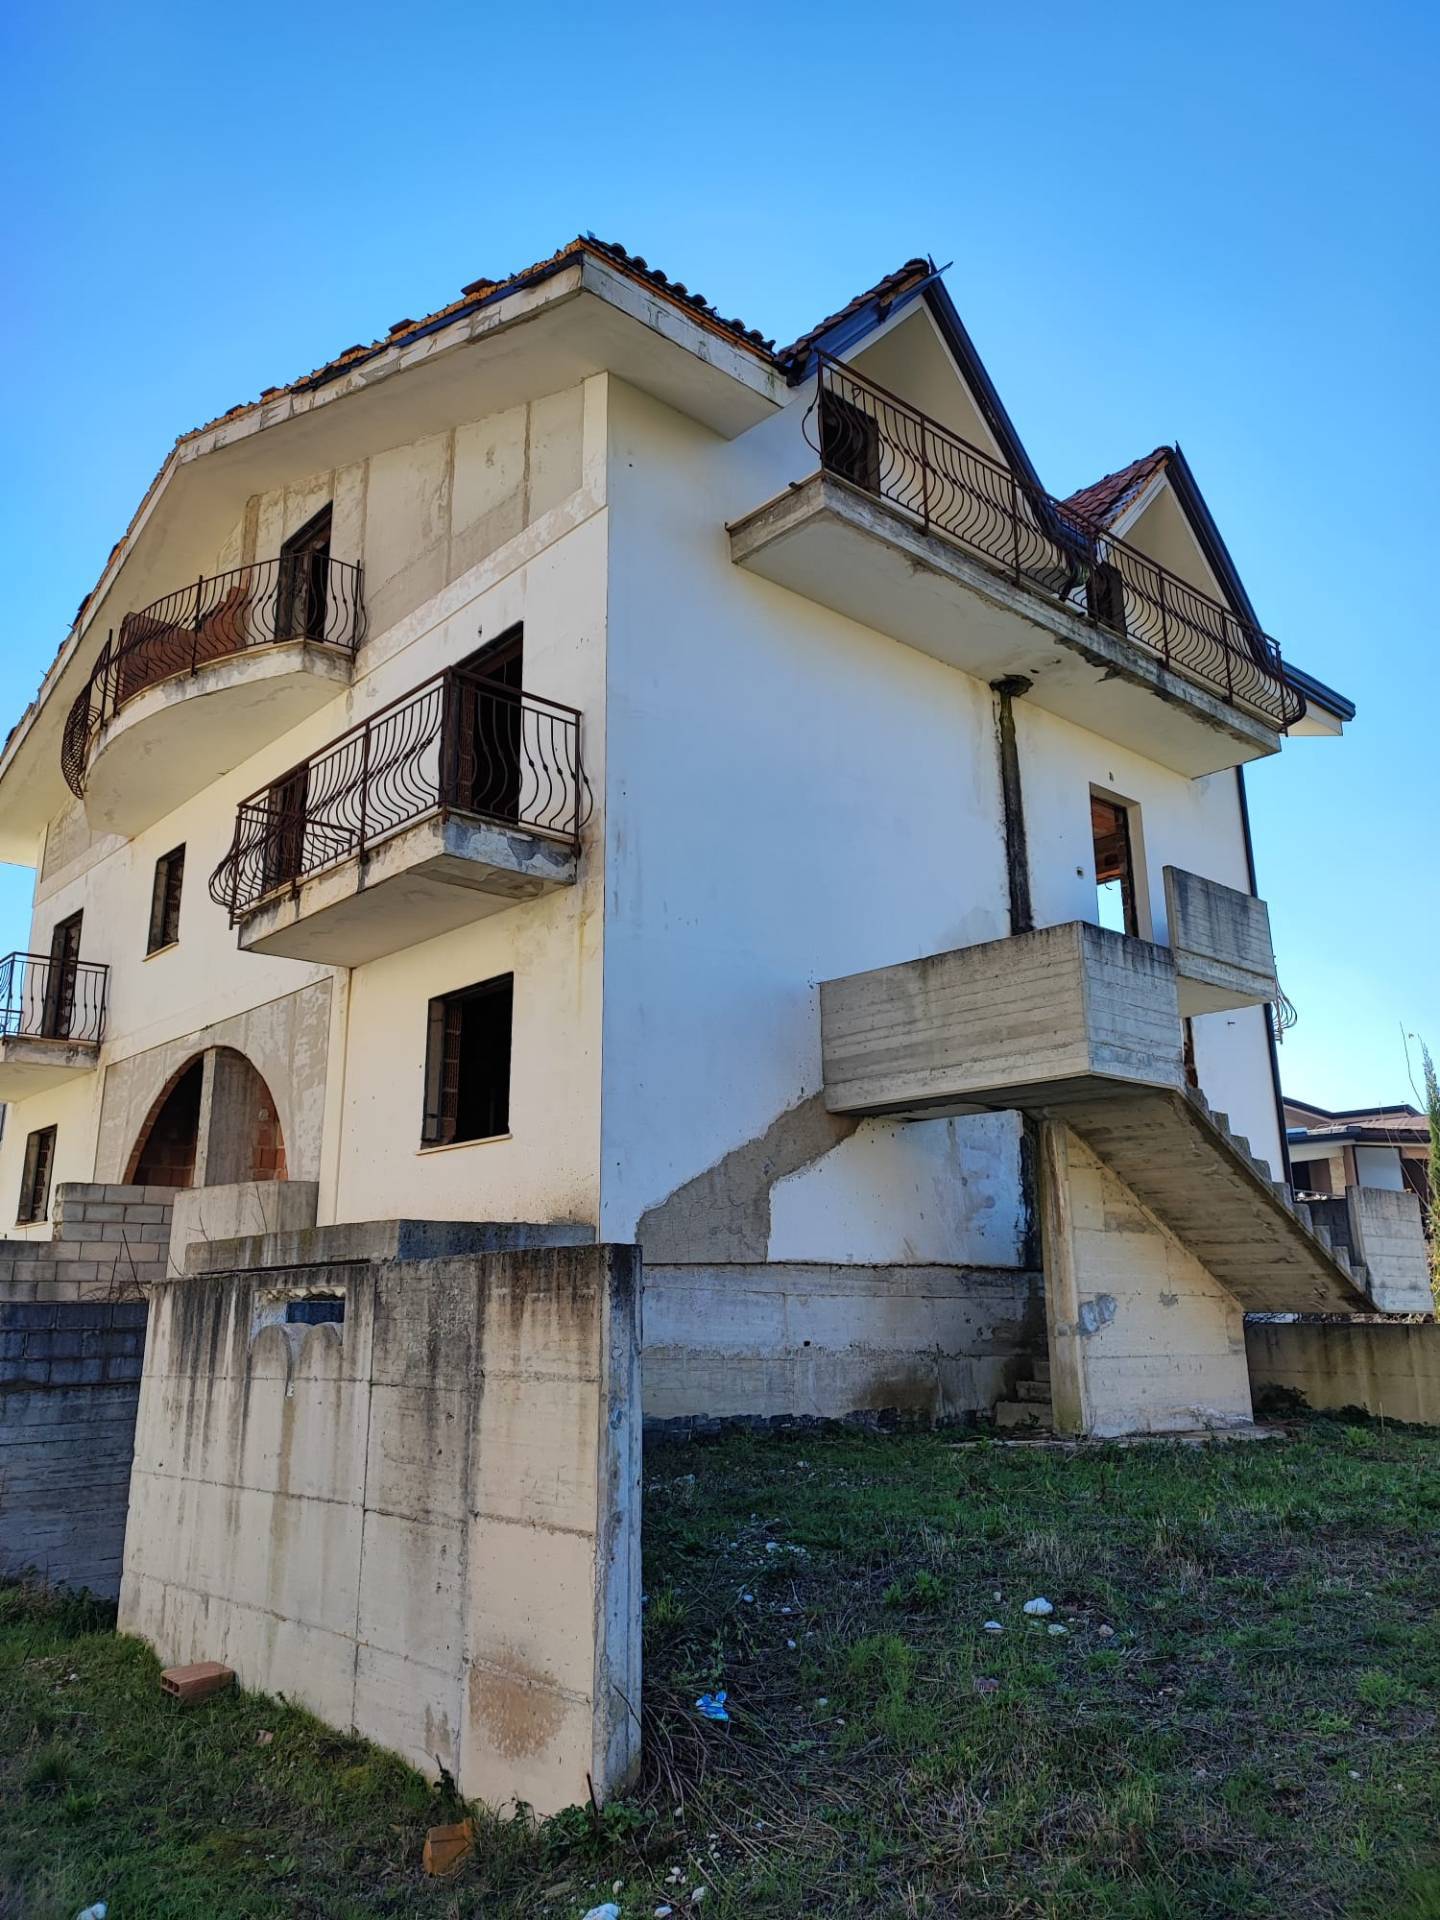 Appartamento in vendita a Quadrelle, 4 locali, prezzo € 55.000 | PortaleAgenzieImmobiliari.it